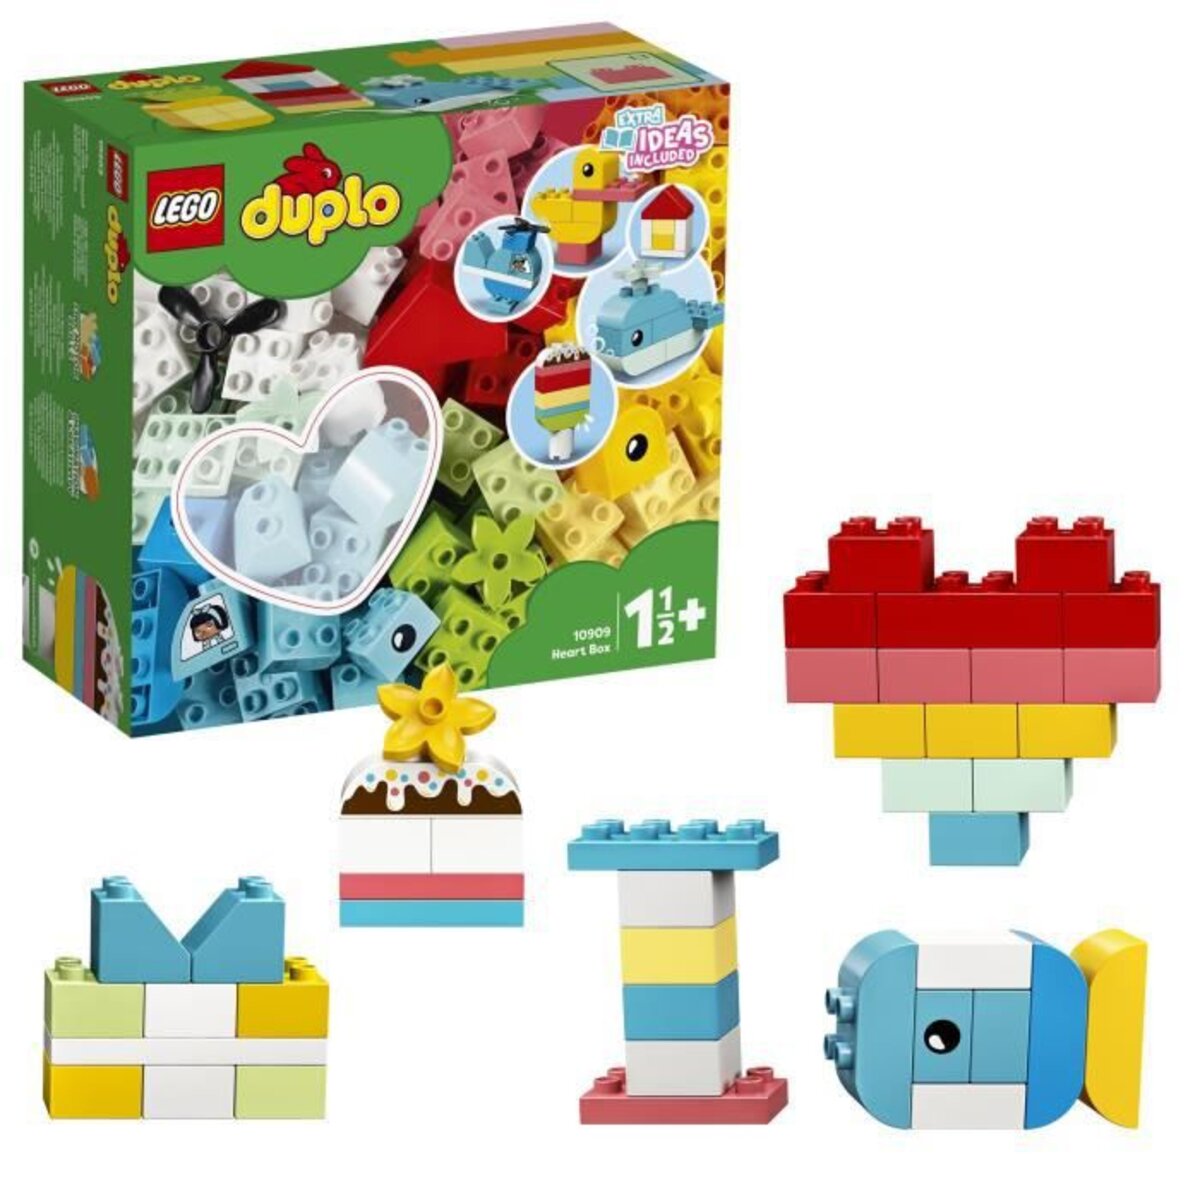 LEGO 10909 DUPLO Classic La Boîte Coeur Premier Set, Jouet Educatif,  Briques de construction pour Bébé 1 an et demi - Zoma